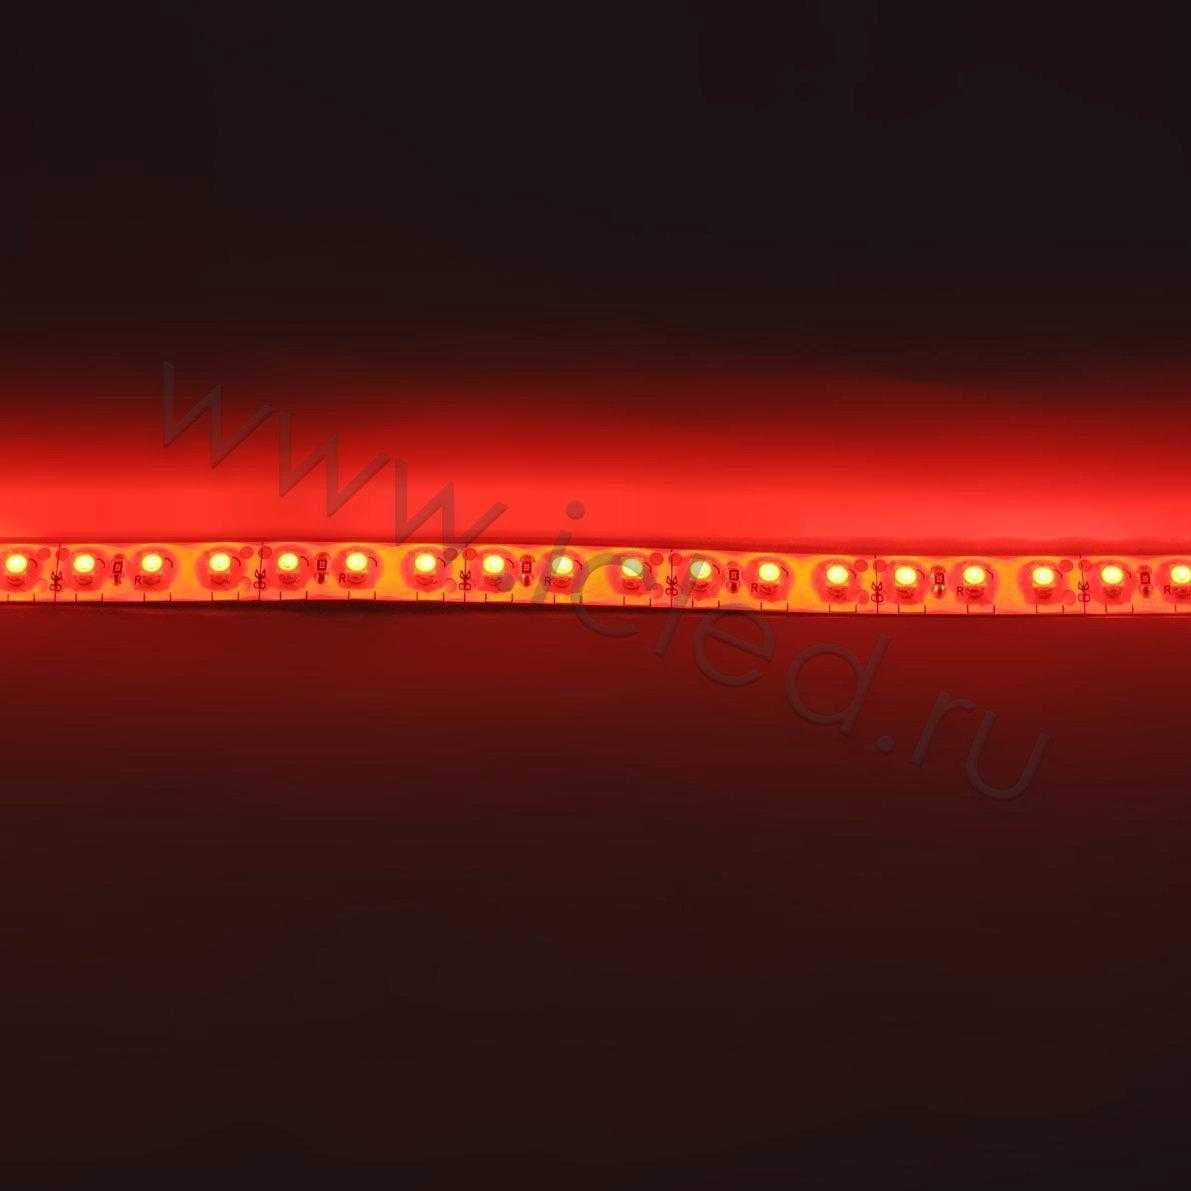 Влагозащищенные светодиодные ленты Светодиодная лента Standart class, 3528, 120led/m, Red, 12V, IP65 Icled